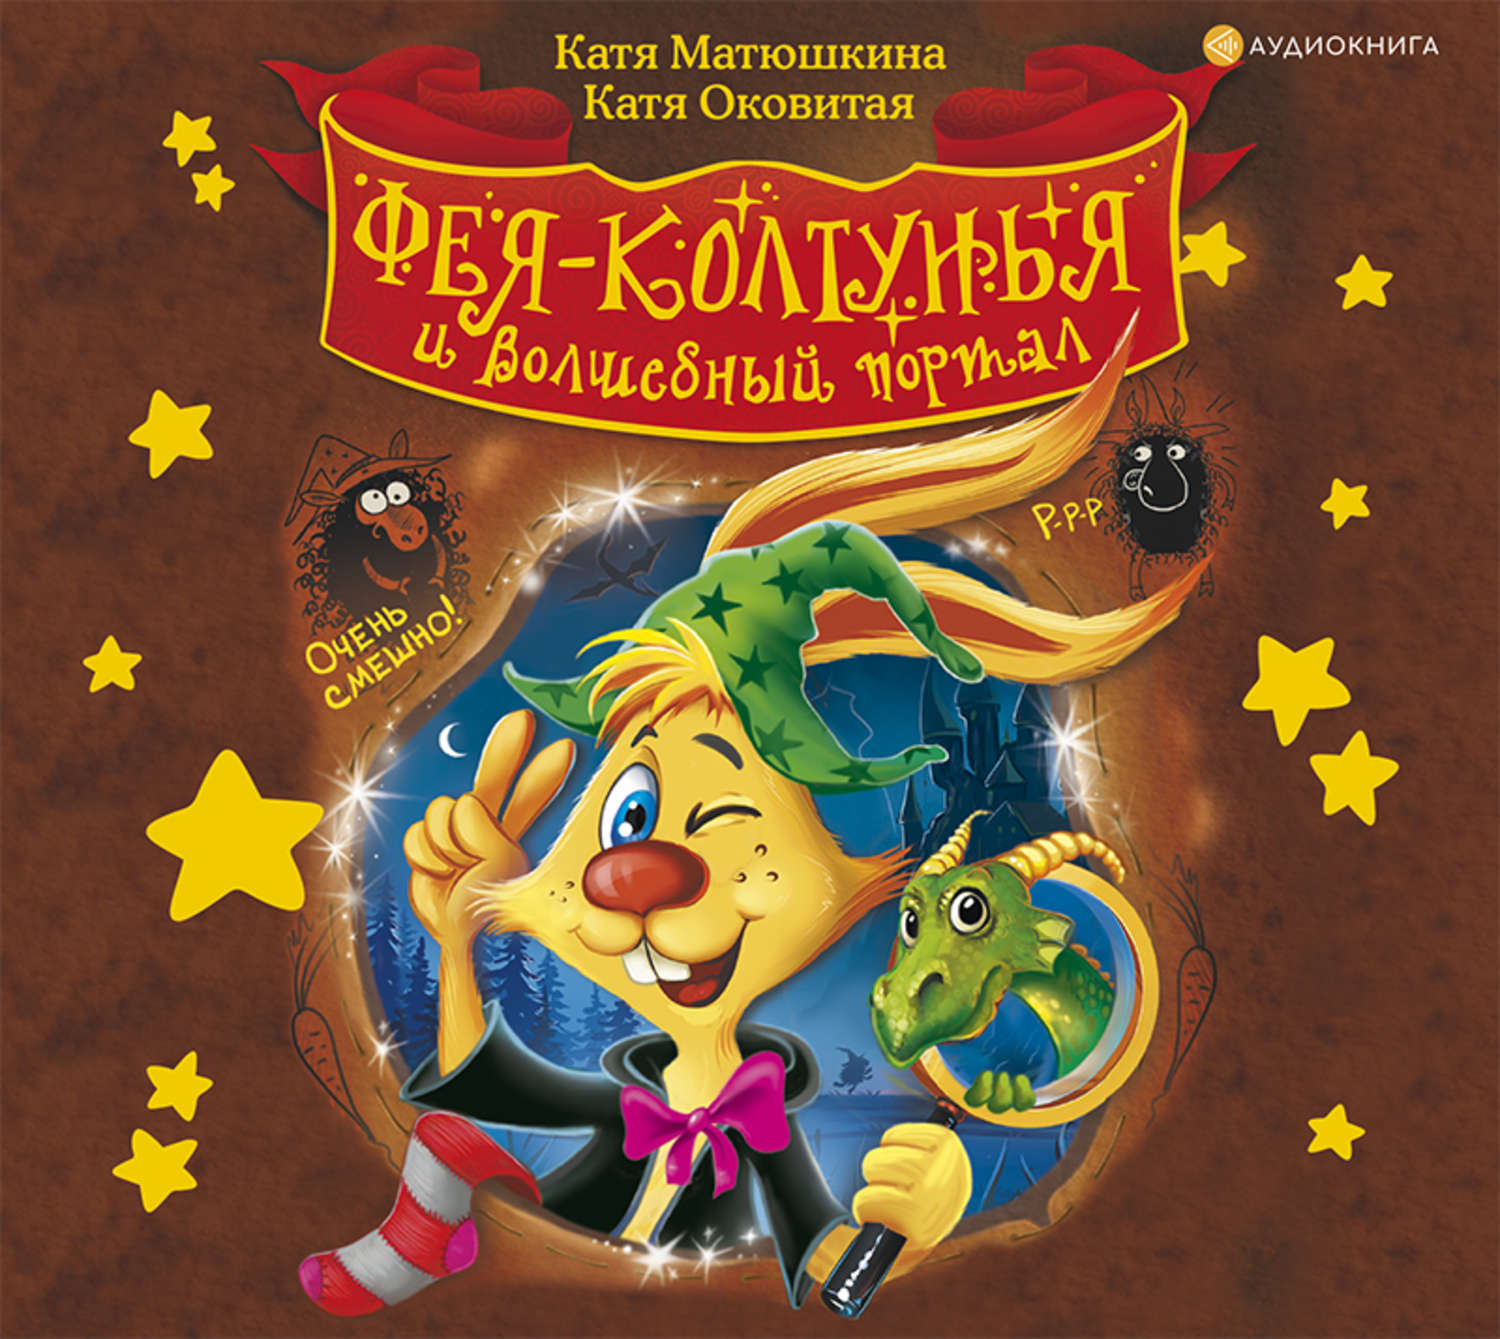 Аудиокнига для детей 9 лет. Катя Матюшкина и Катя Оковитая. Матюшкина и Оковитая. Матюшкина Фея колдунья.